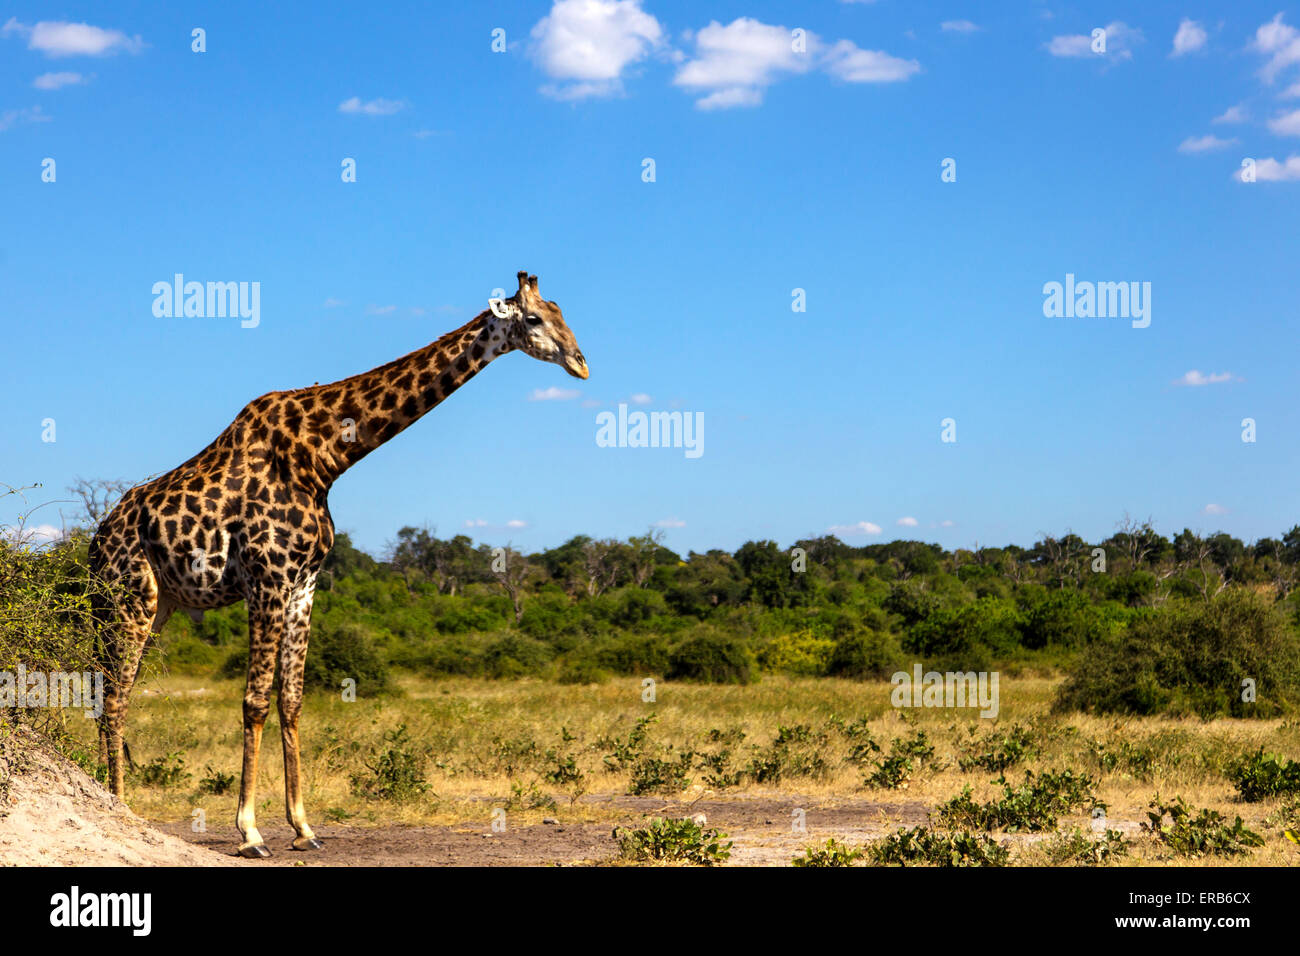 Giraffe in botswana Stock Photo